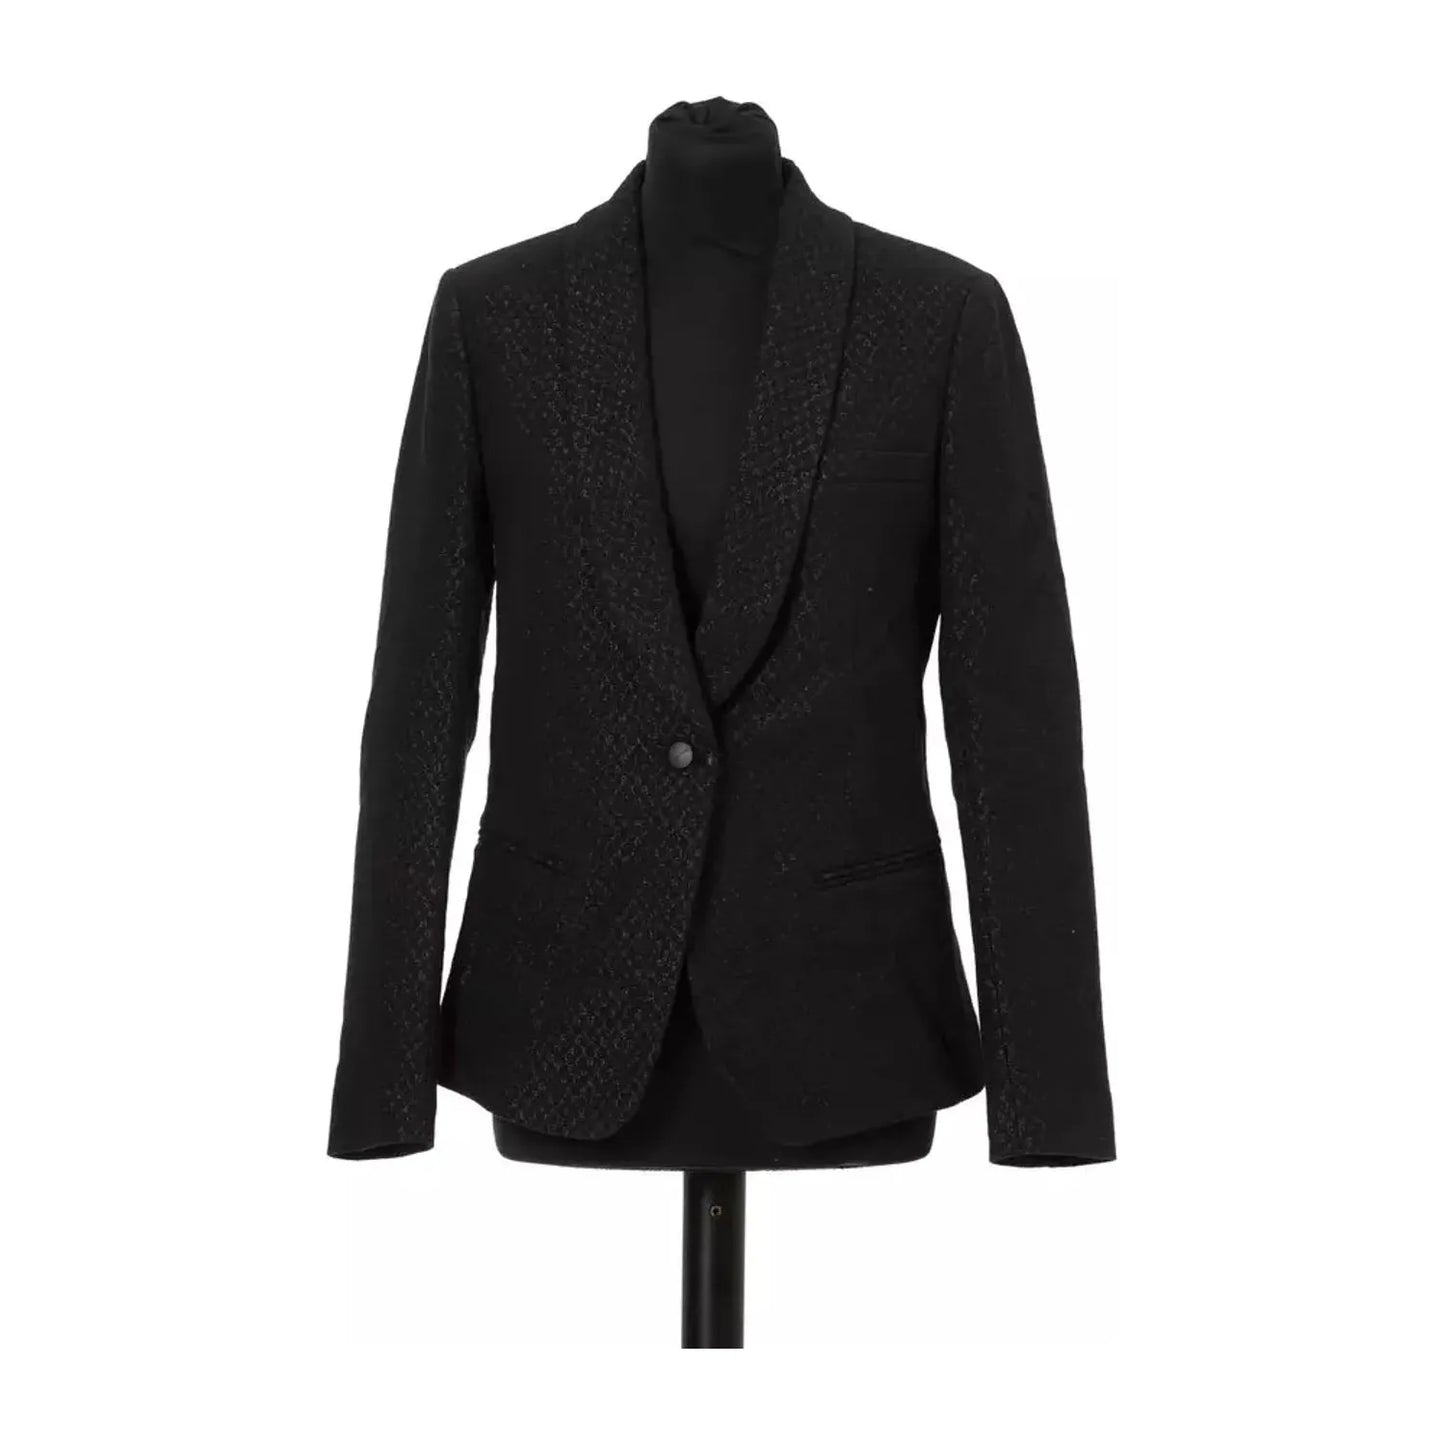 Jacob Cohen Elegant Slim Cut Fabric Jacket with Lurex Details Blazer Jacket black-cotton-suits-blazer